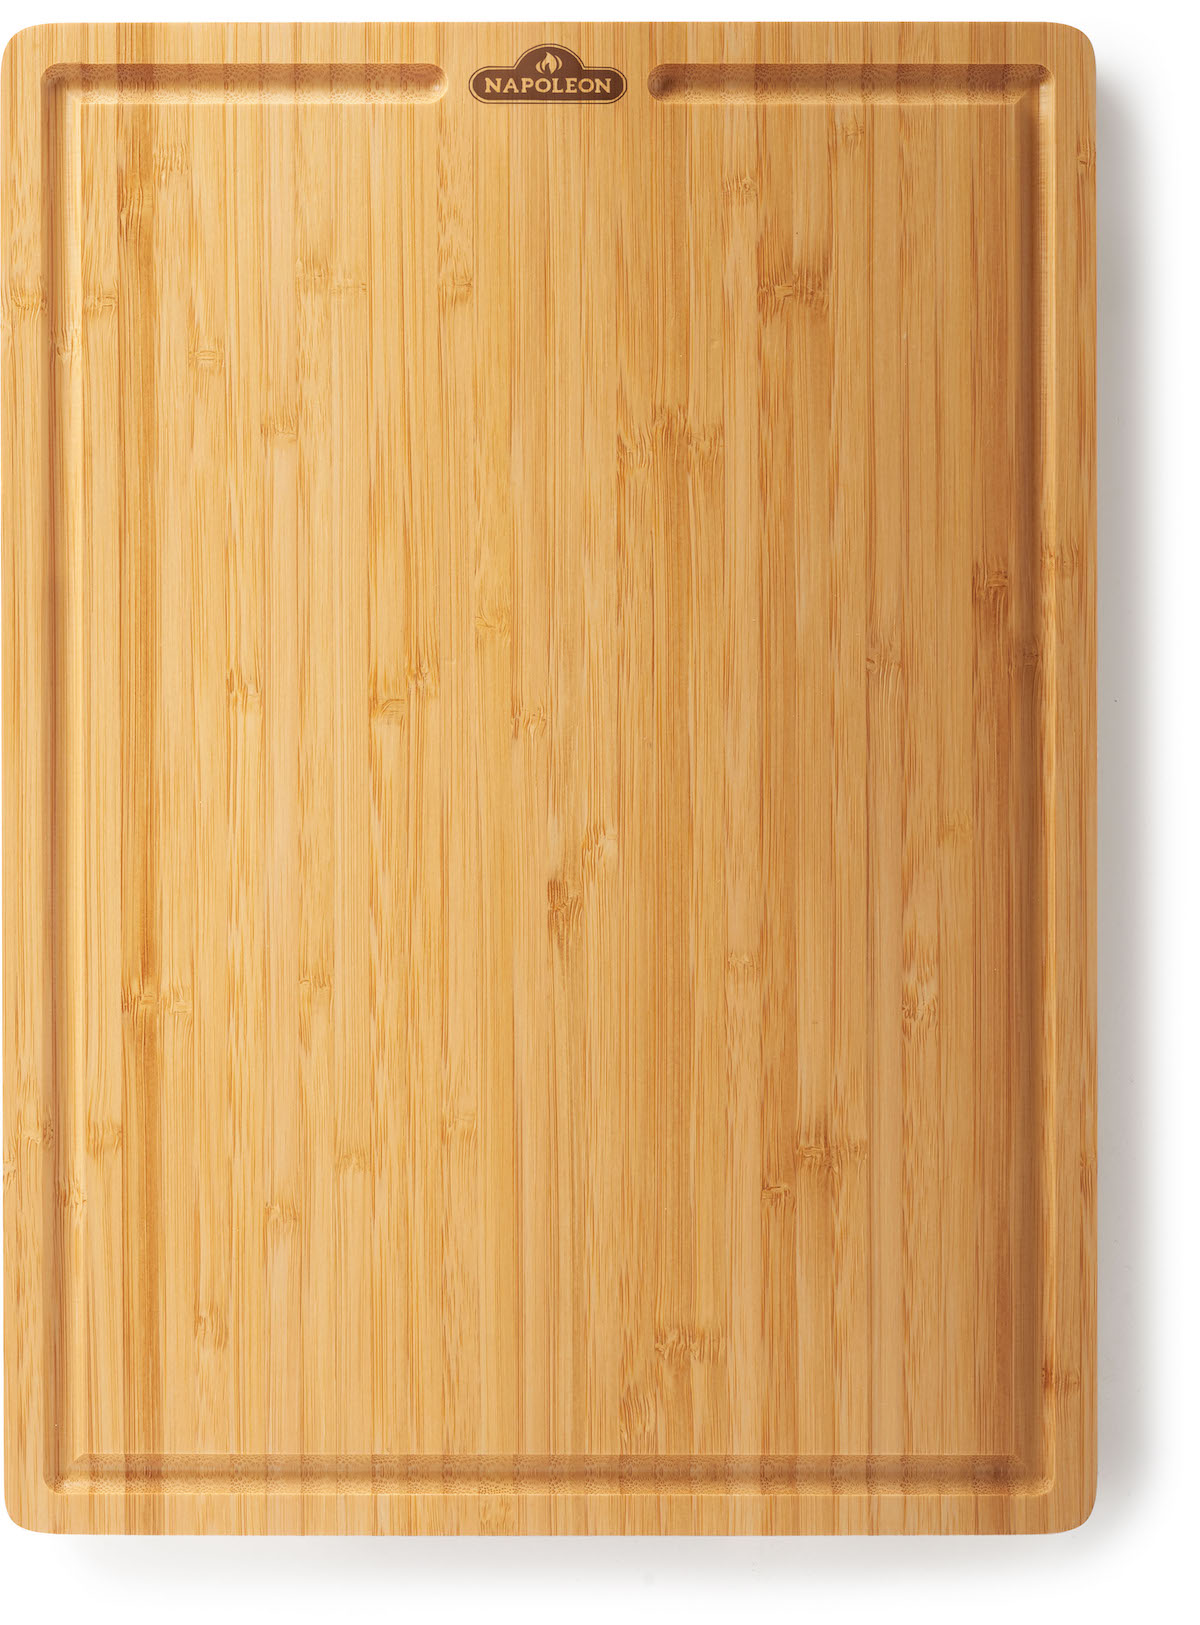 NAPOLEON Bambus-Schneidebrett 37x27 cm für kleine Seitenablagen